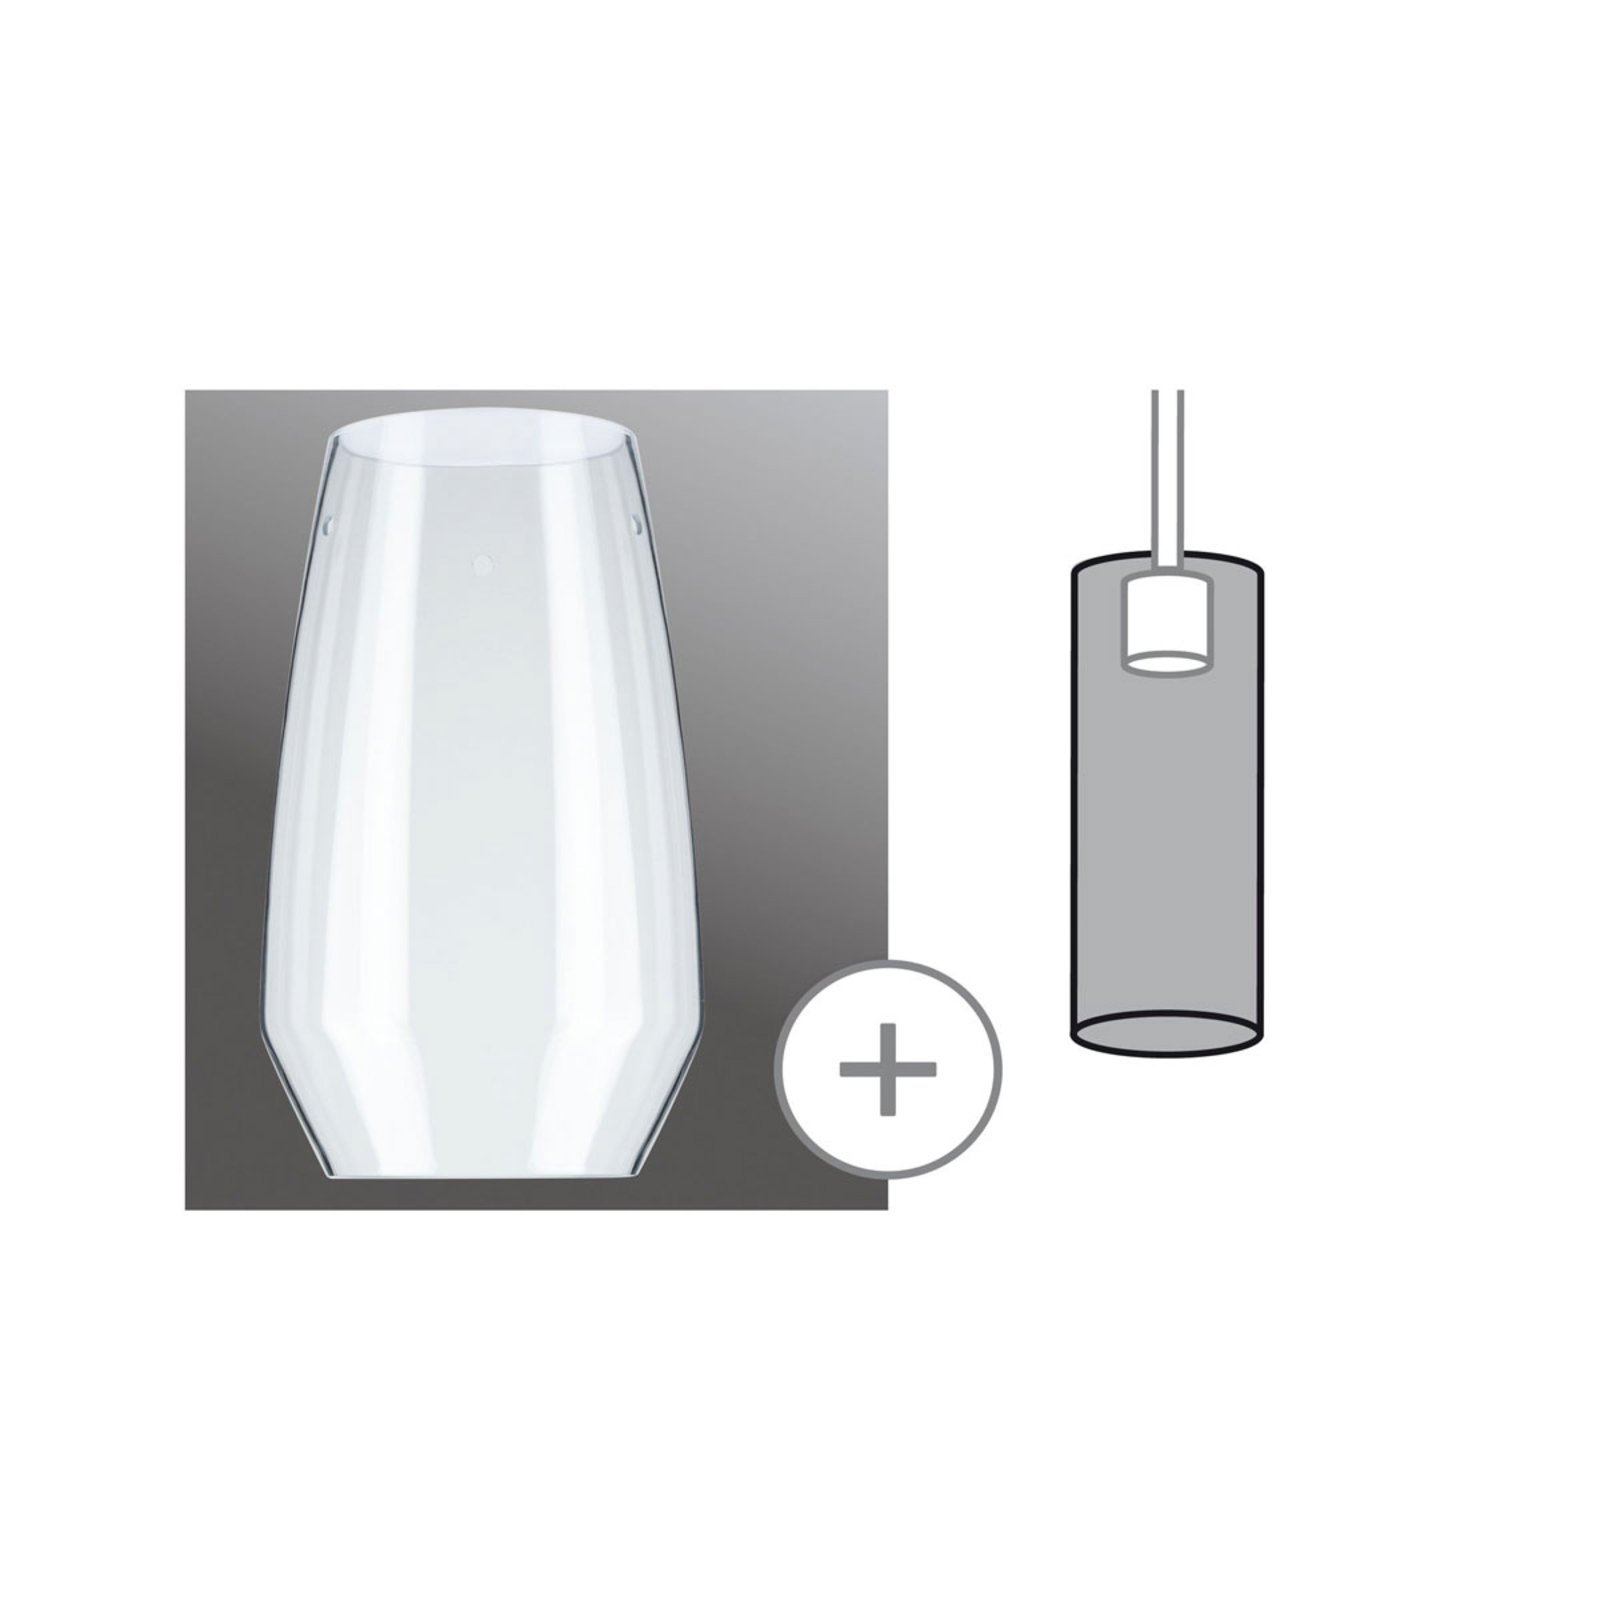 Paulmann Vento lámpaernyő, átlátszó, Ø 17 cm, üveg